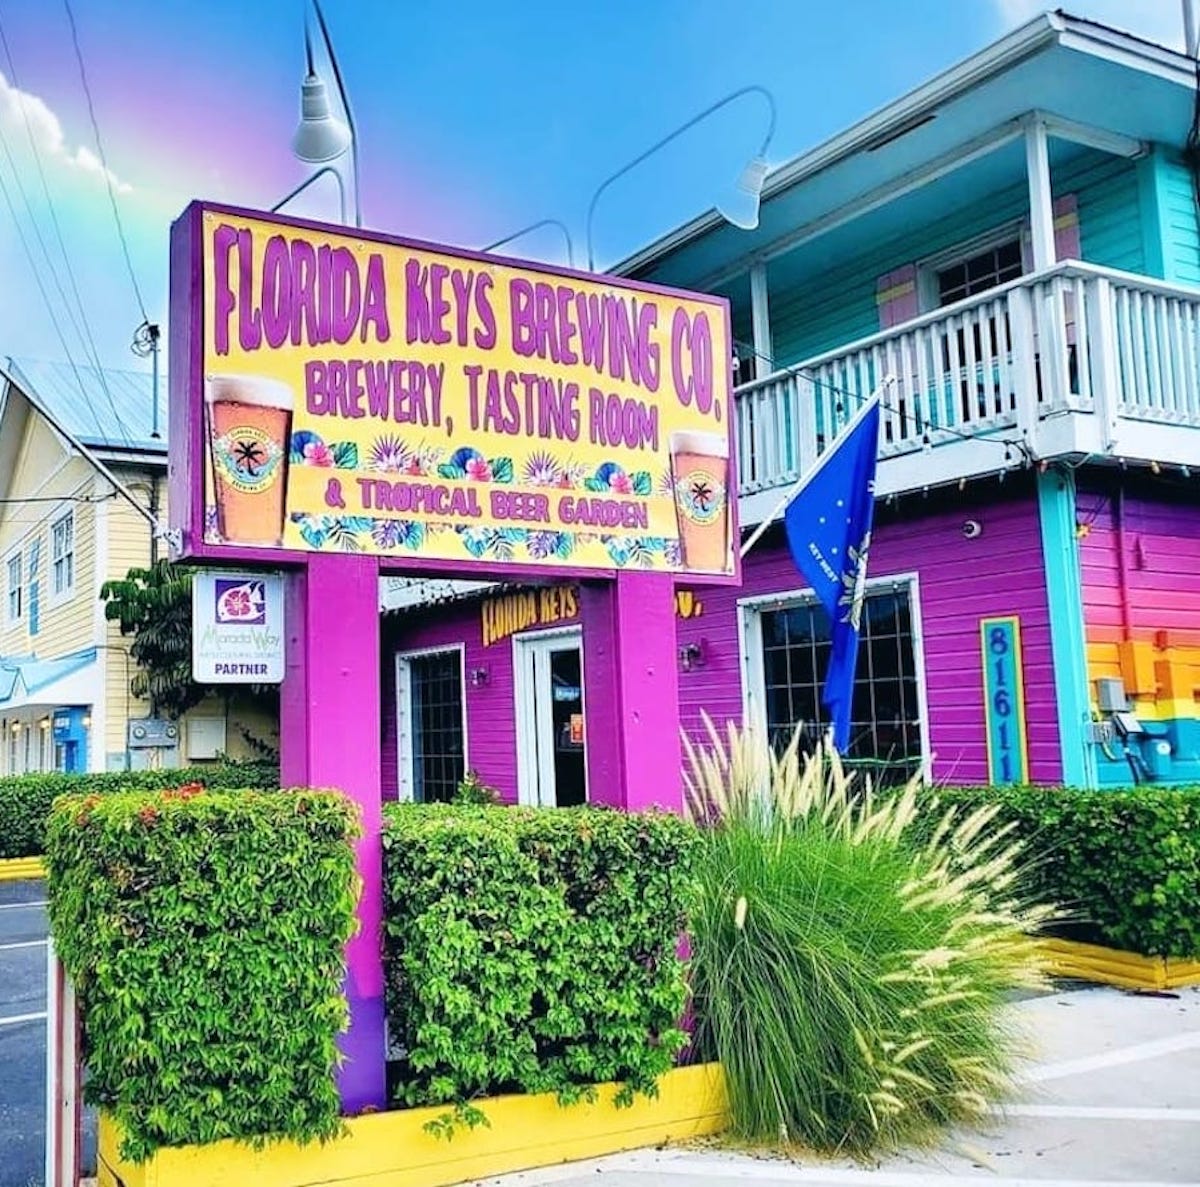 Por qué necesita visitar Florida Keys Brewing Company en Islamorada - 29